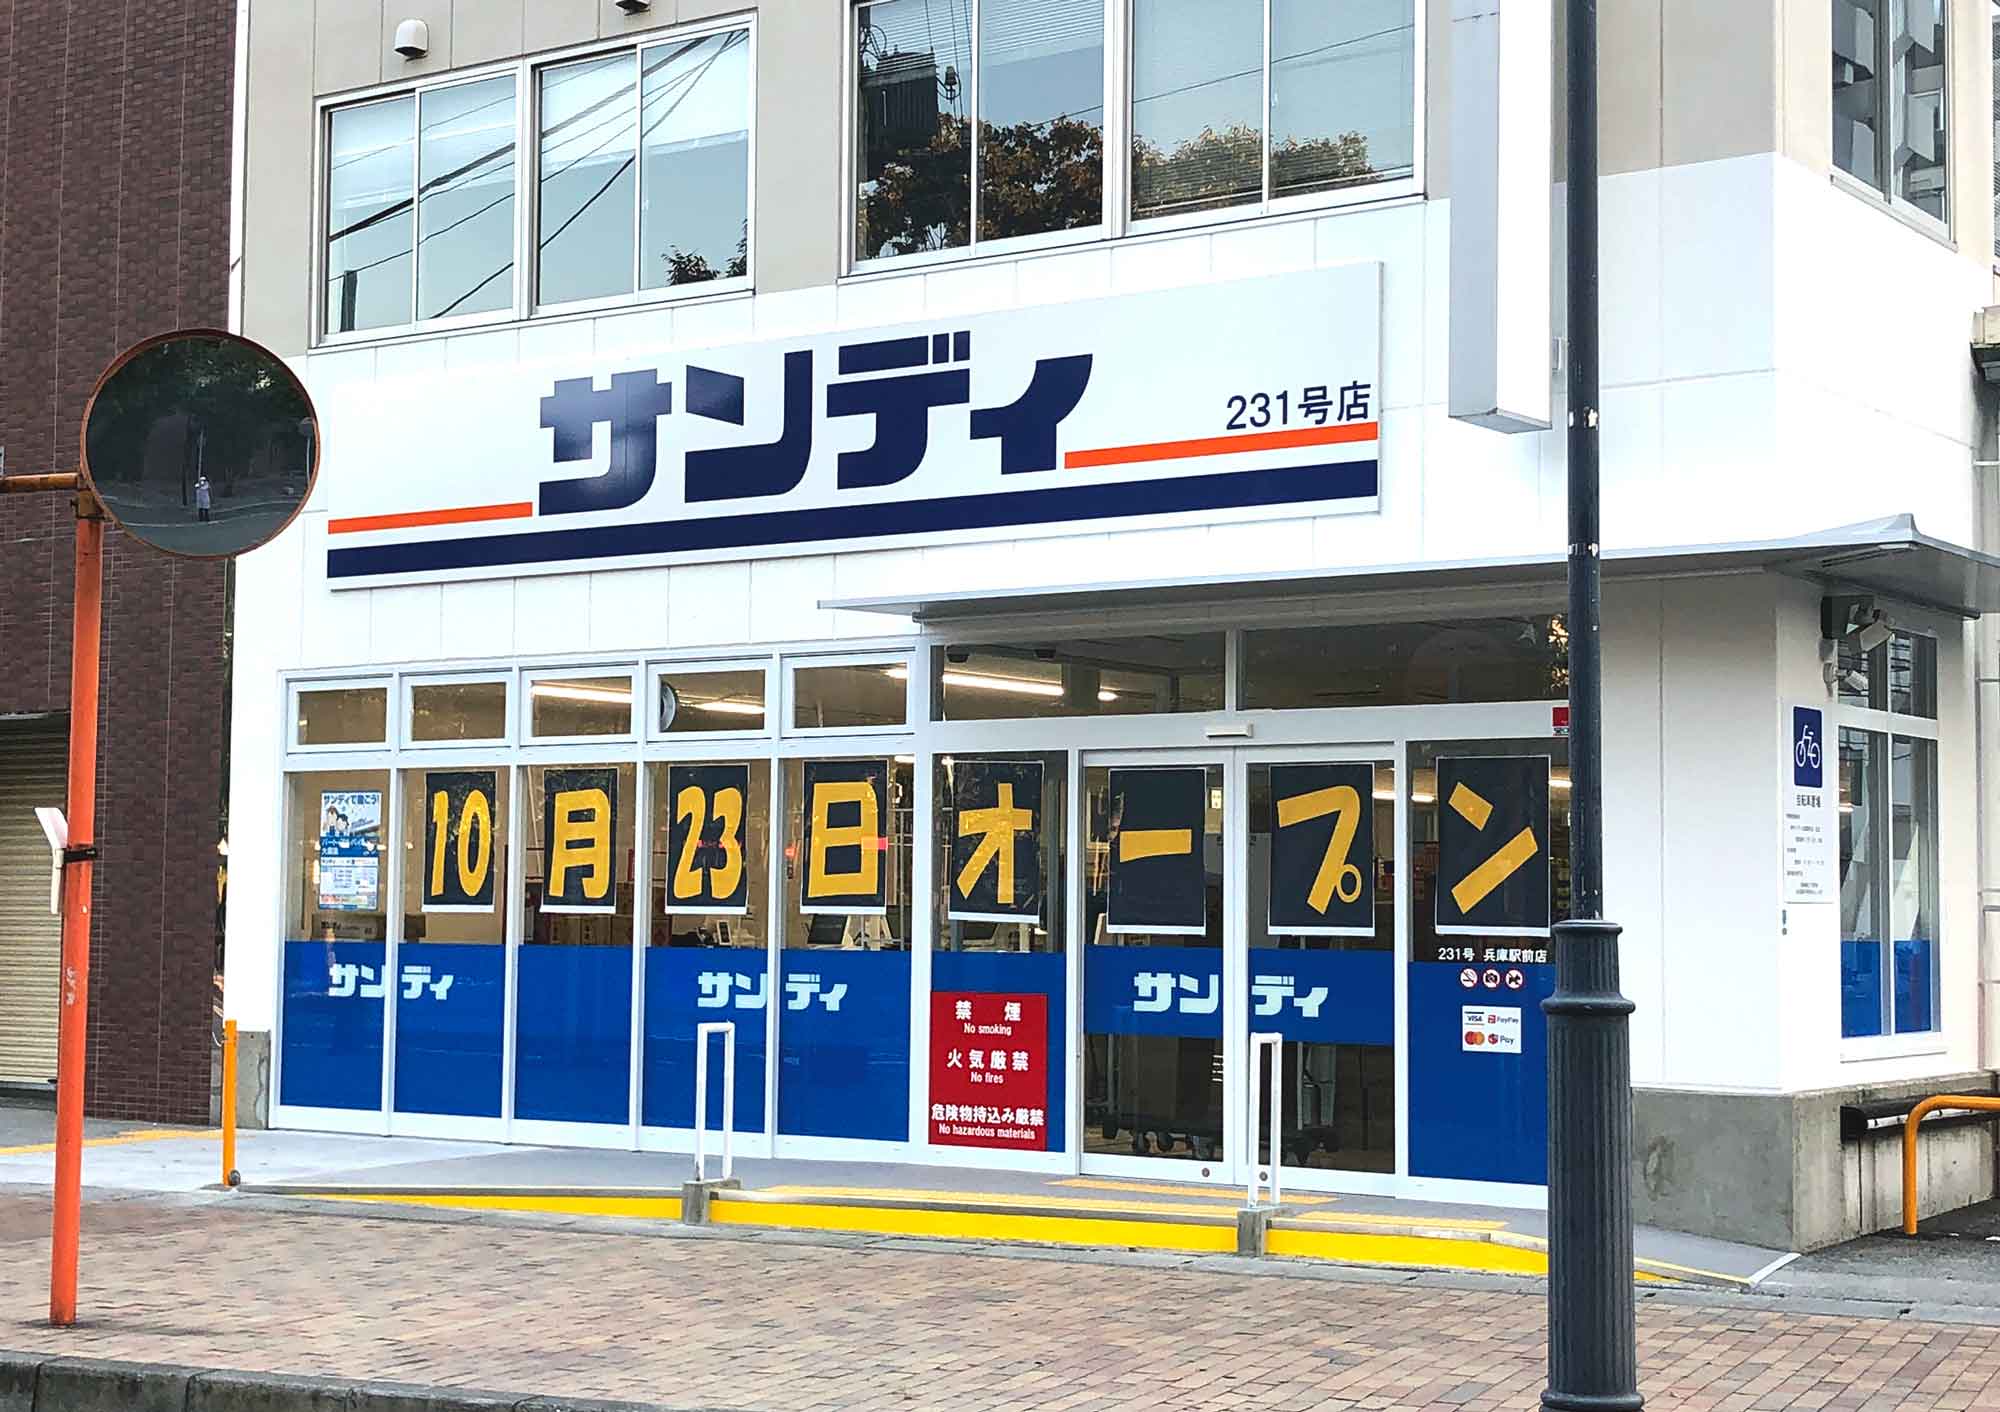 2021年10月23日土曜日新規オープンサンディ兵庫駅前店内にマルヨネが出店。